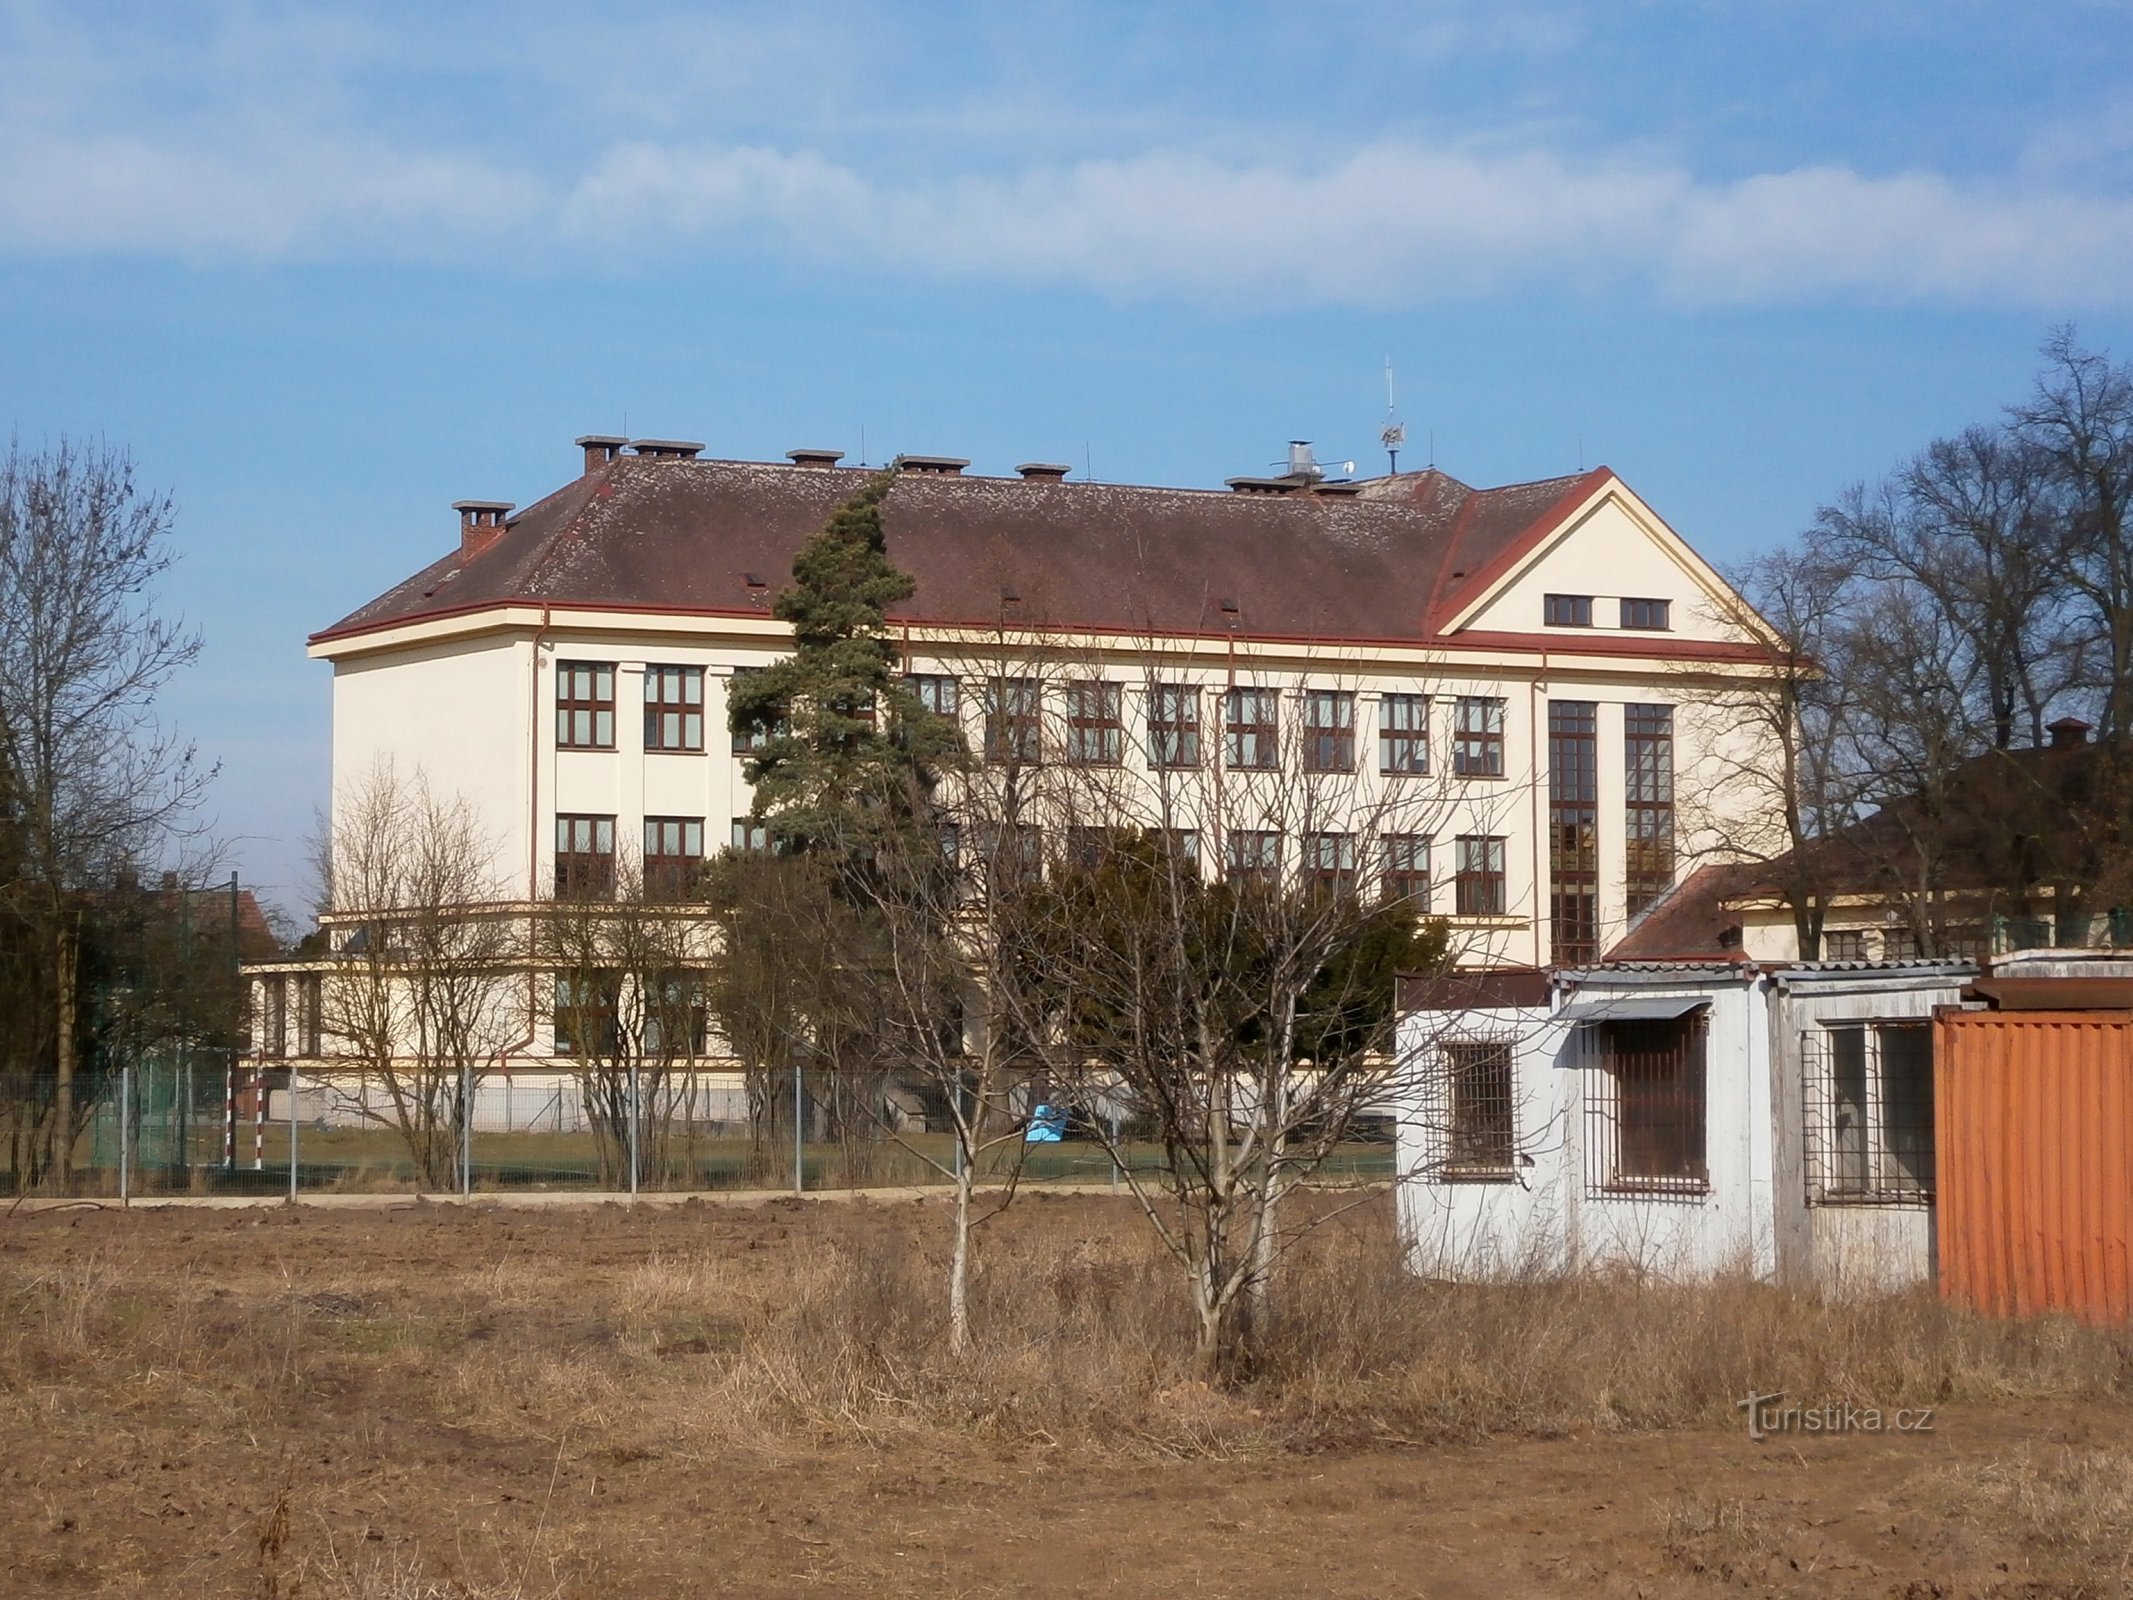 Початкова школа імені Масарика в Плотіште над Лабом (Градец Кралове, 9.3.2015)